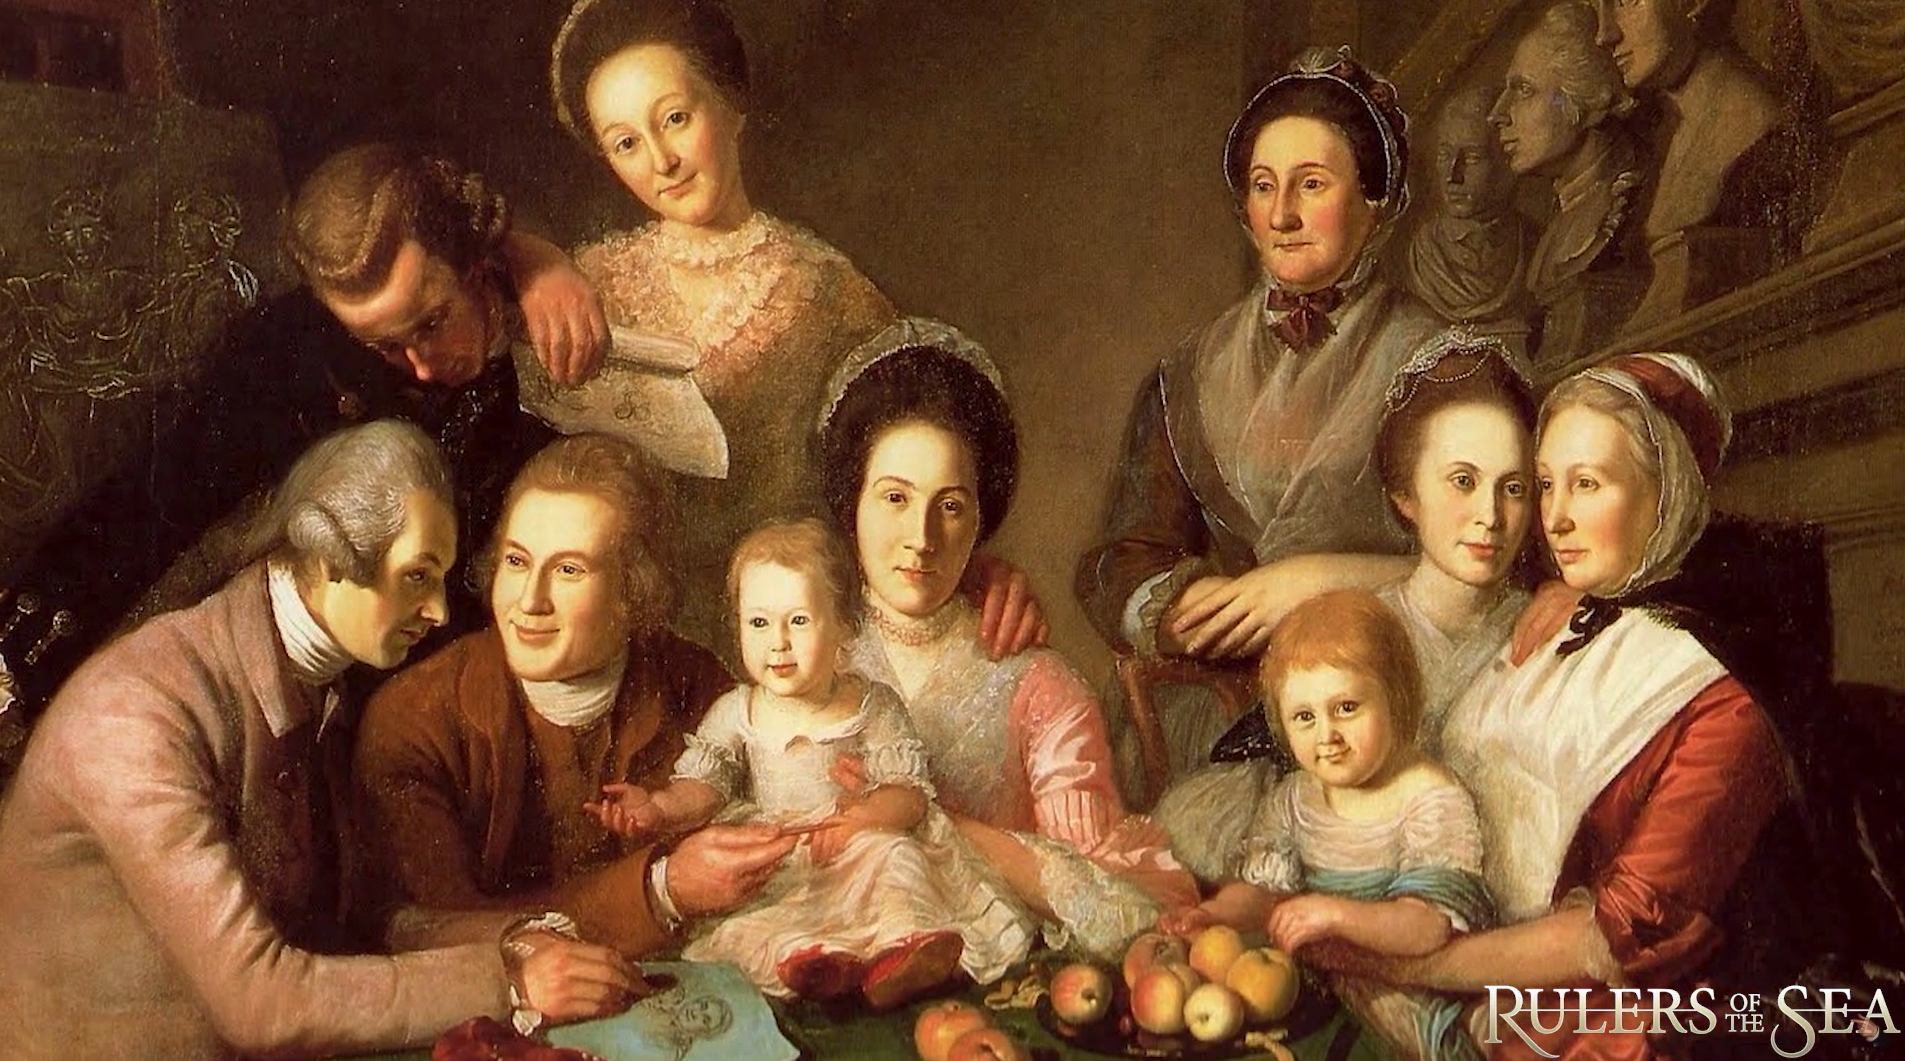 История жизни обычной семьи 18. Рембрандт семейный портрет. Тропинин семейный портрет. Даниэль Шульц семейный портрет. Тропинин семейный портрет графов Морковых.